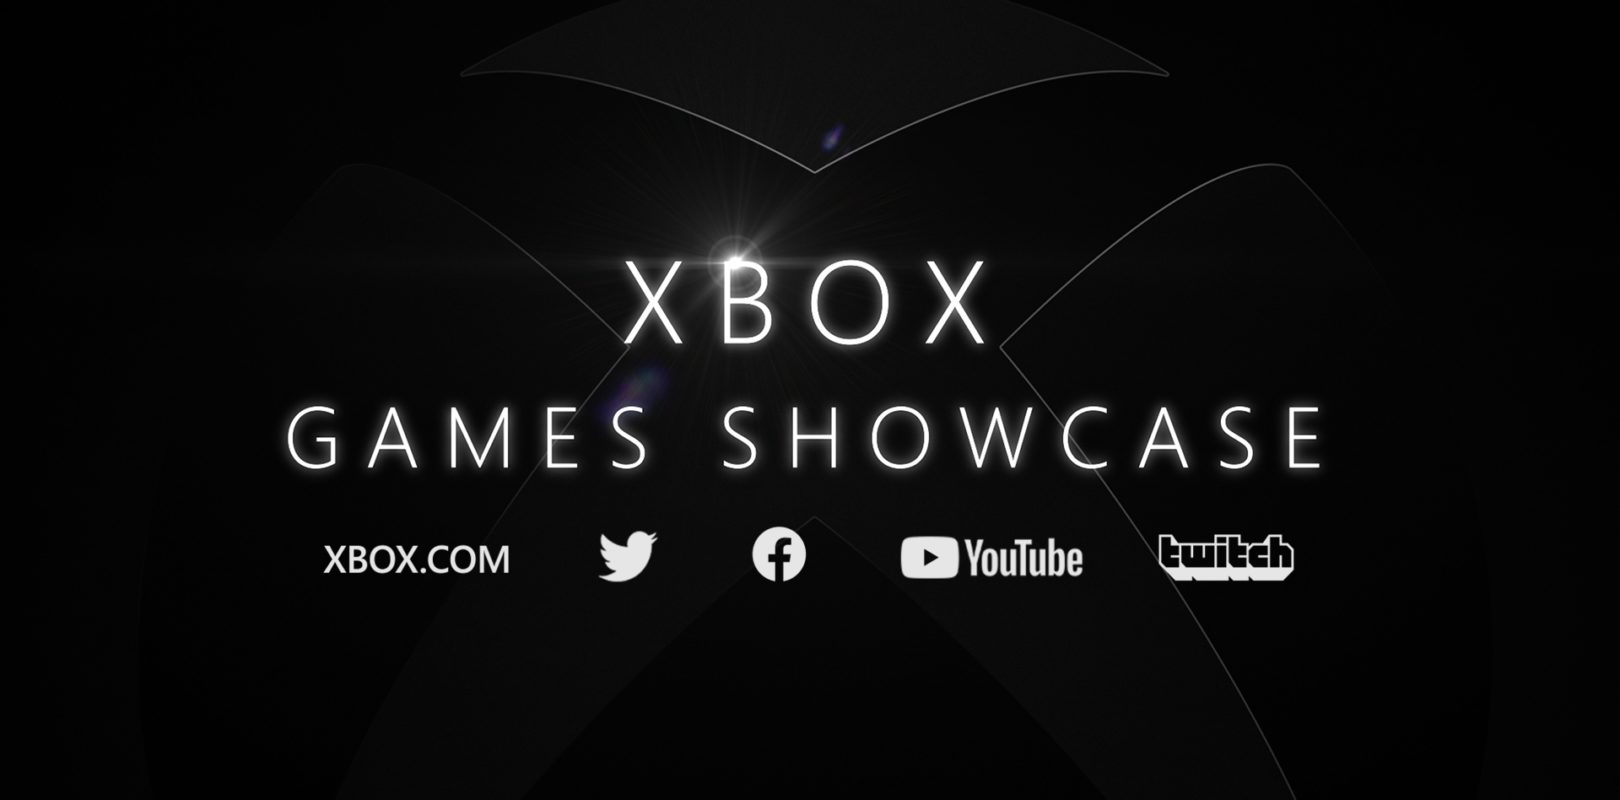 Atentos a la conferencia de Xbox Games Showcase donde mostraran Halo